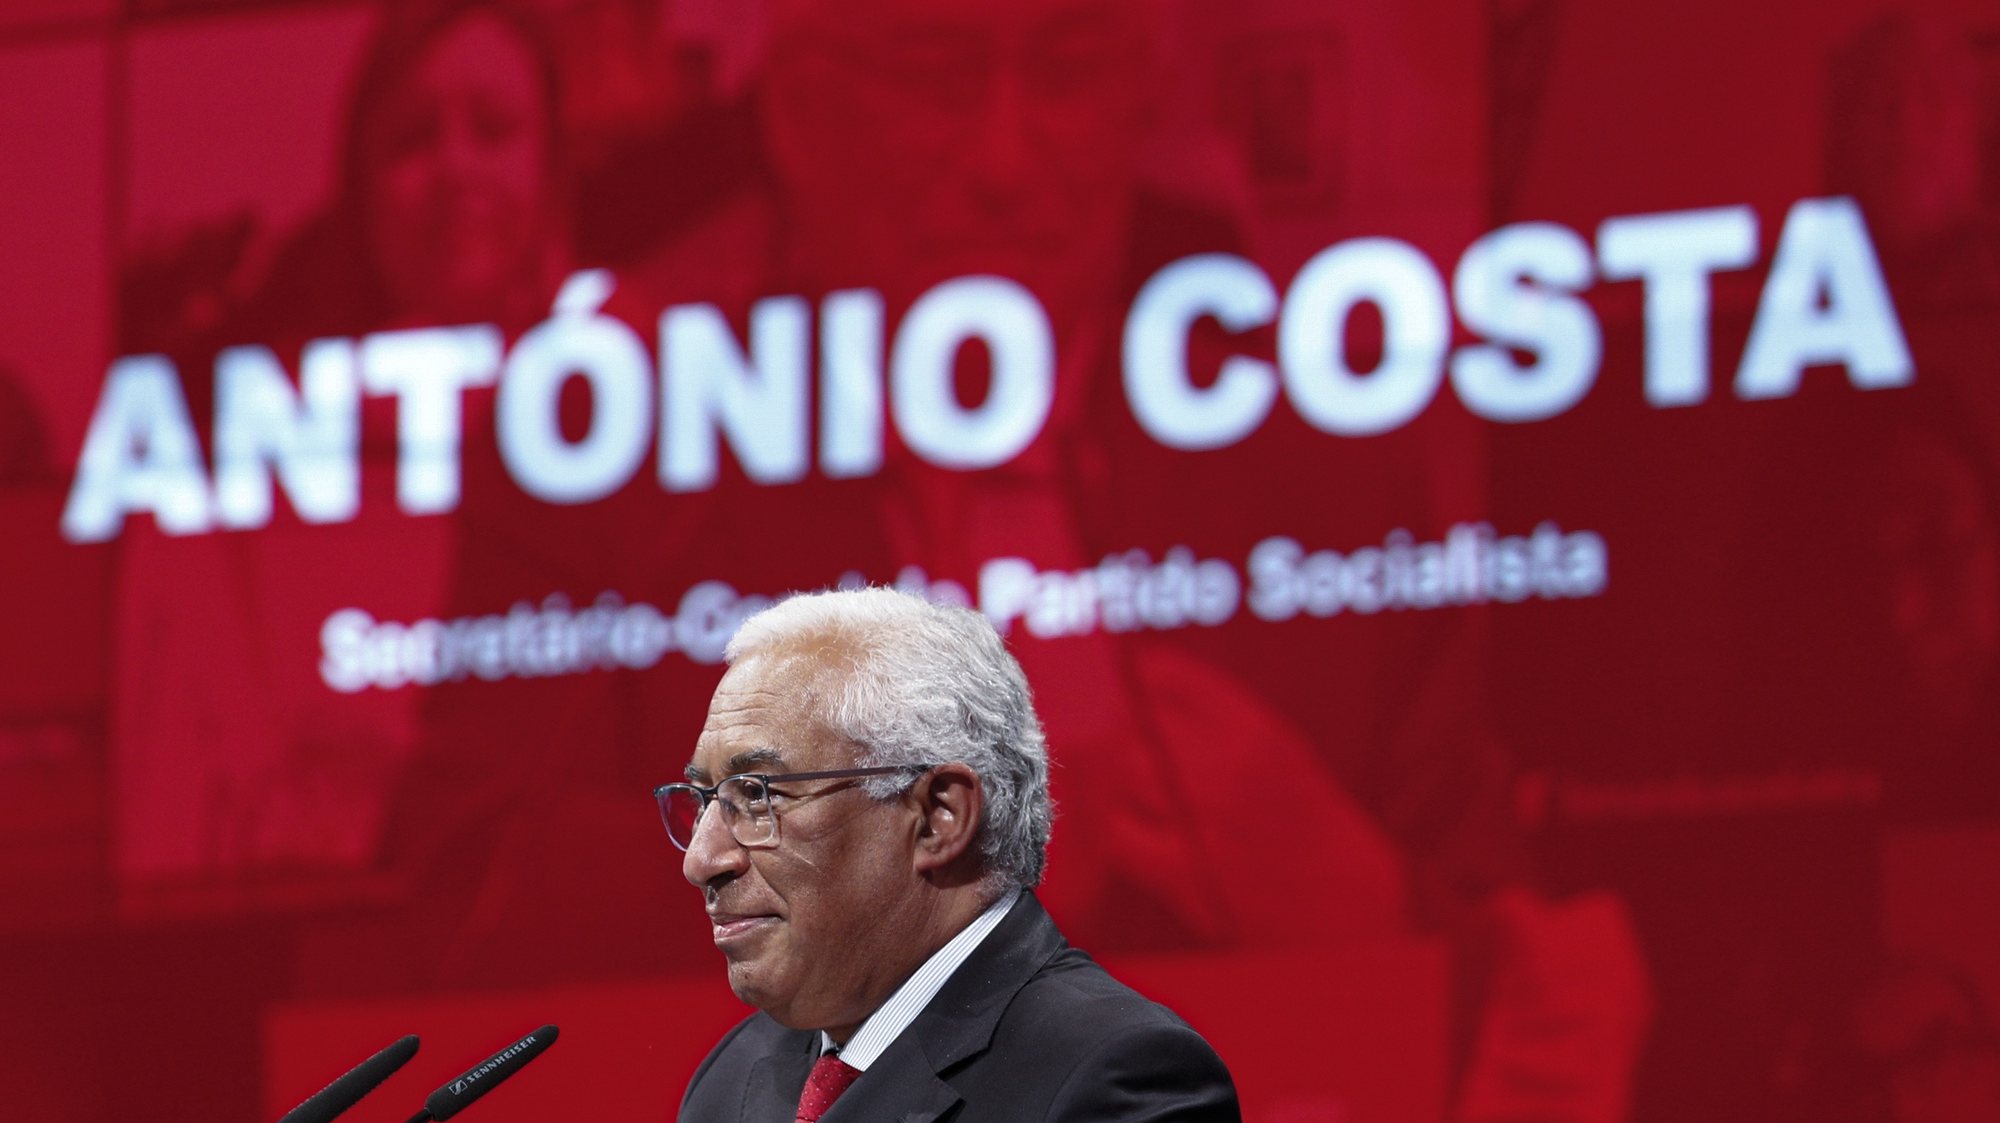 O secretário-geral do Partido Socialista (PS), António Costa, intervém durante a cerimónia comemorativa do 48º aniversário do partido, Lisboa, 19 de abril de 2021. ANTÓNIO COTRIM/LUSA